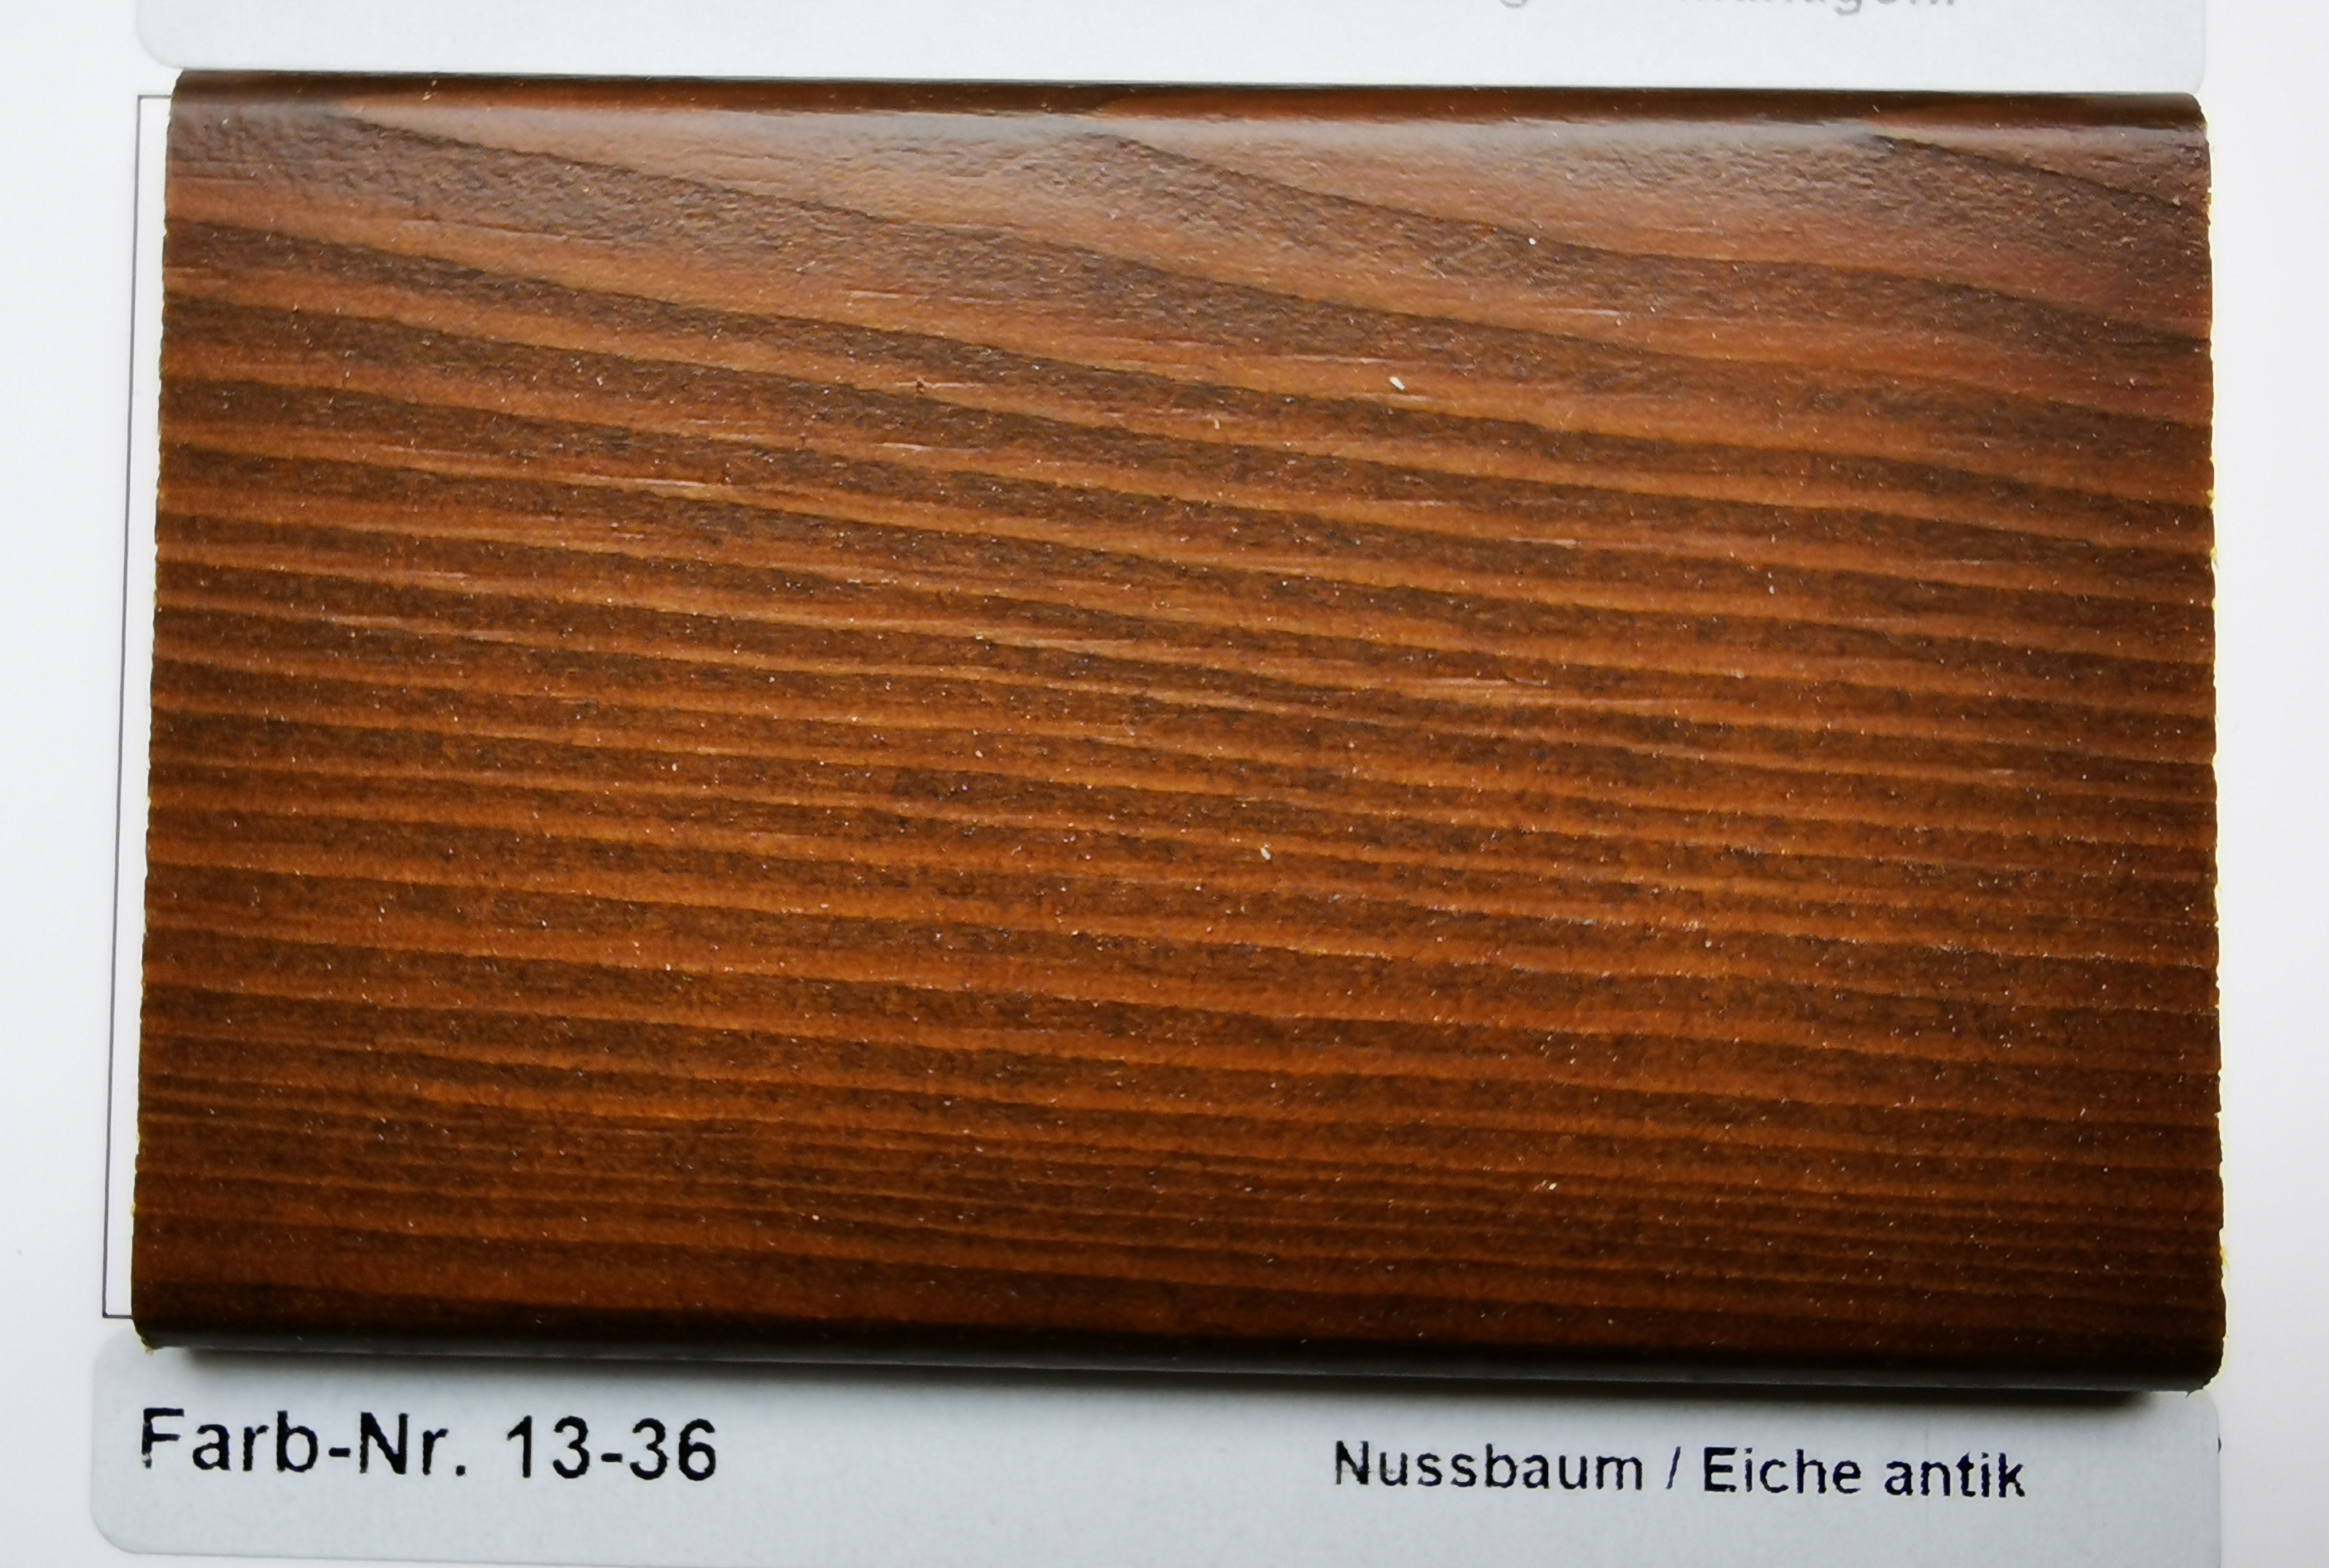 Farb-Nr. 13-36 Nussbaum / Eiche antik